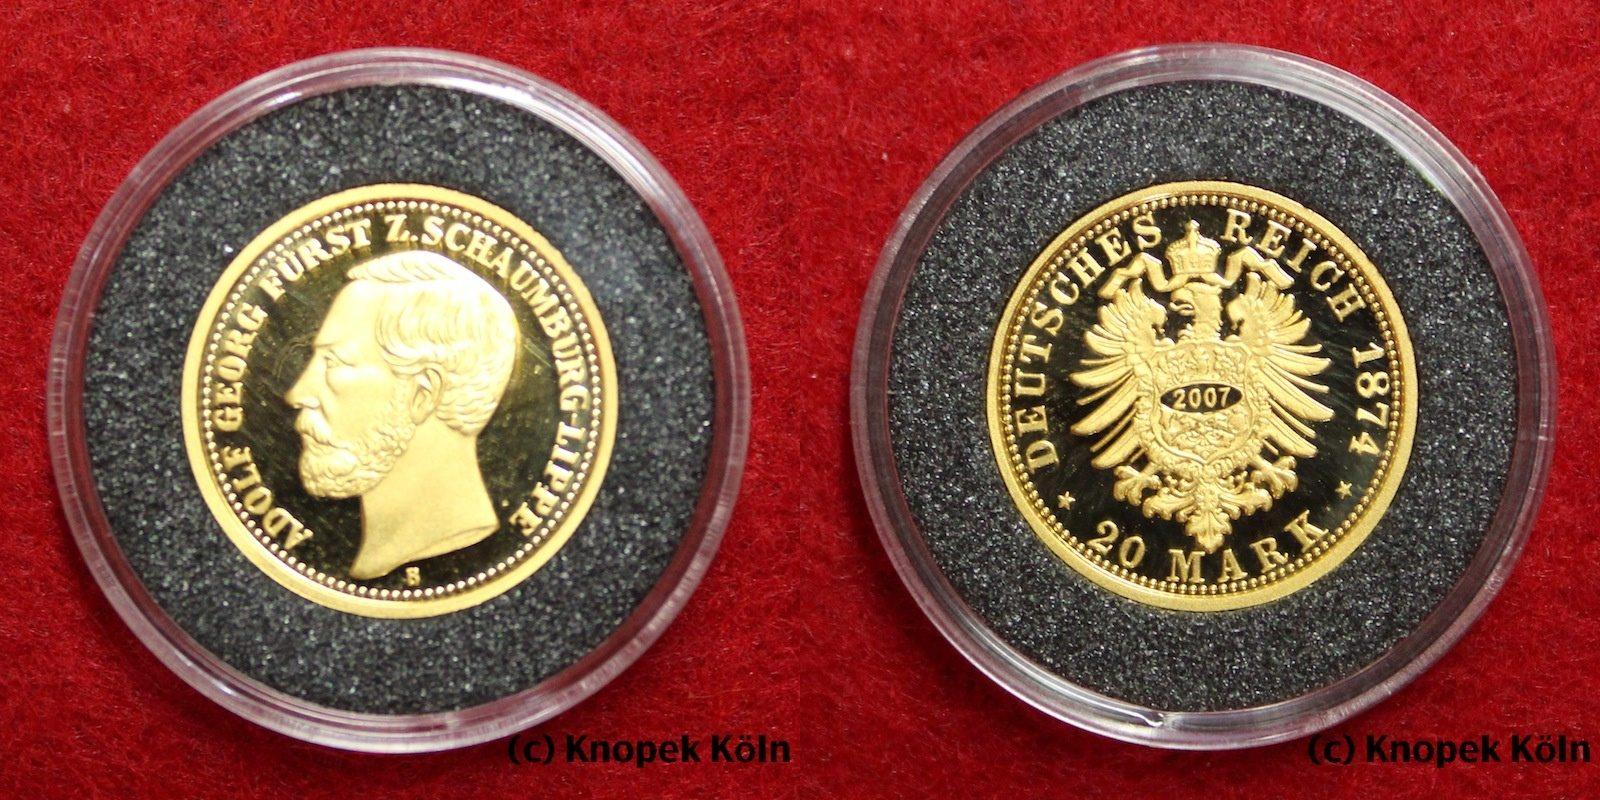 Foto Schaumburg-Lippe / Deutsches Reich 20 Mark Gold 2007 Np